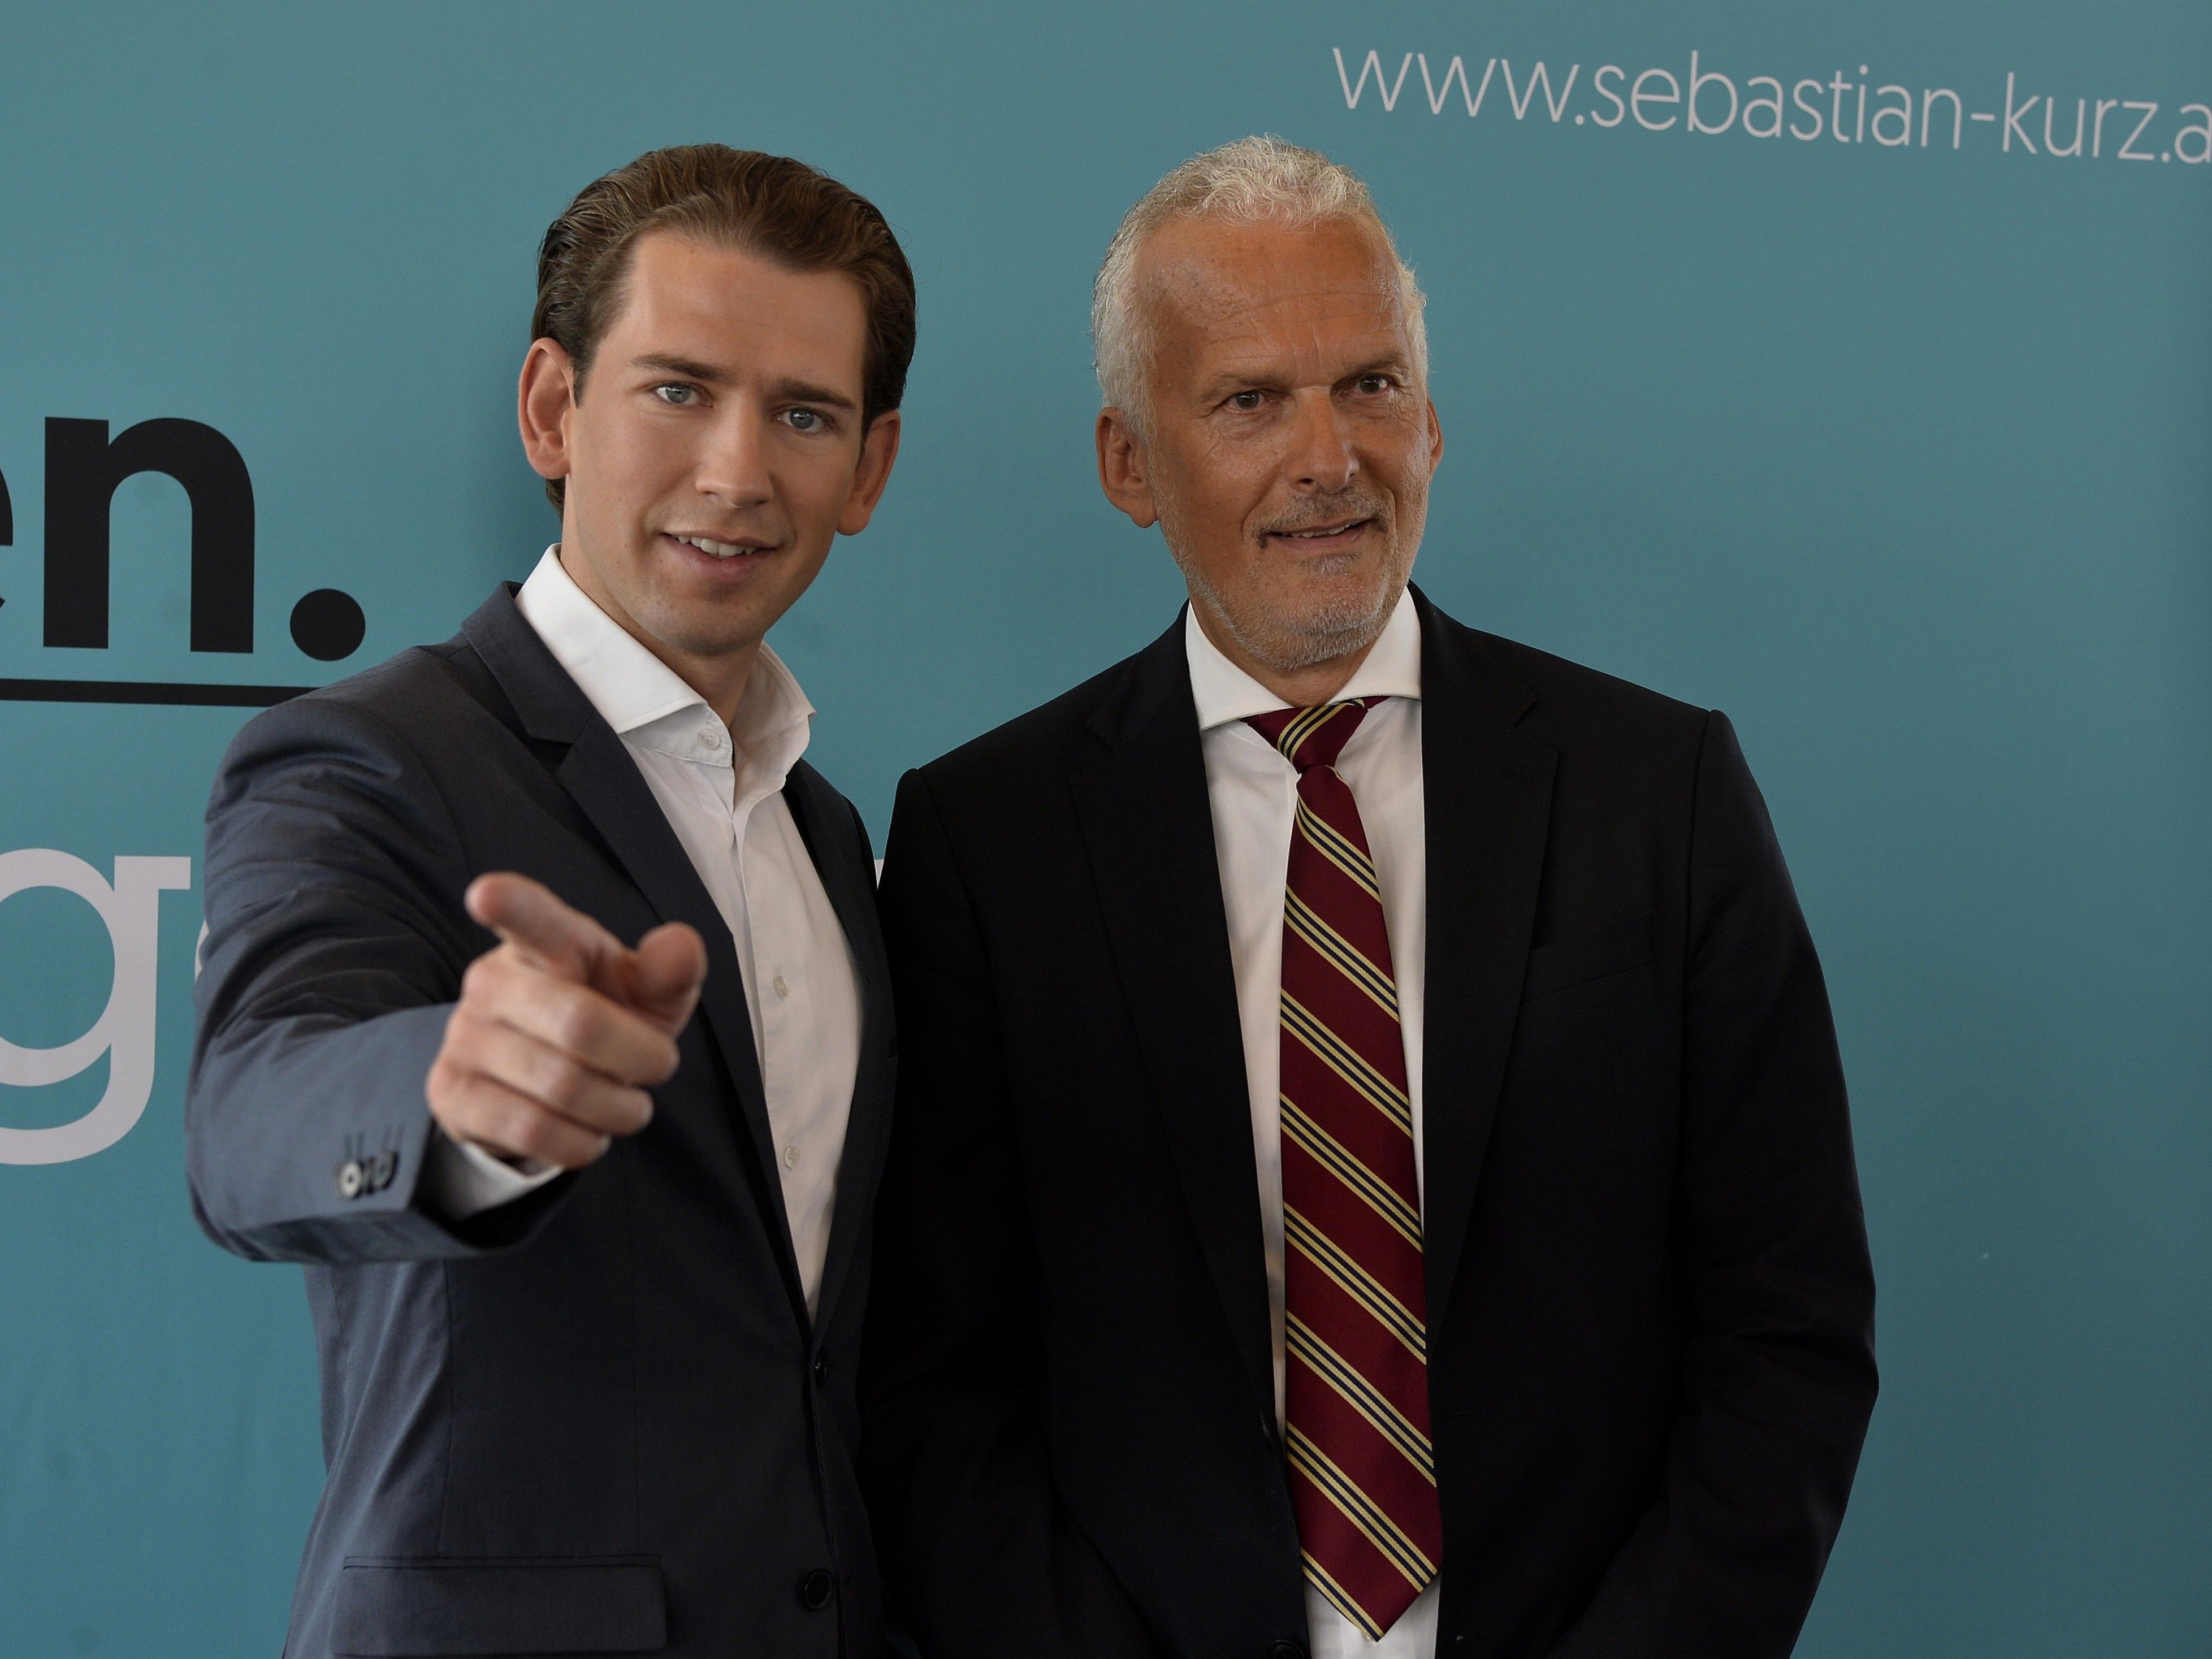 ÖVP-Chef Kurz präsentiert mit Josef Moser einen neuen Kandidaten auf der Bundesliste